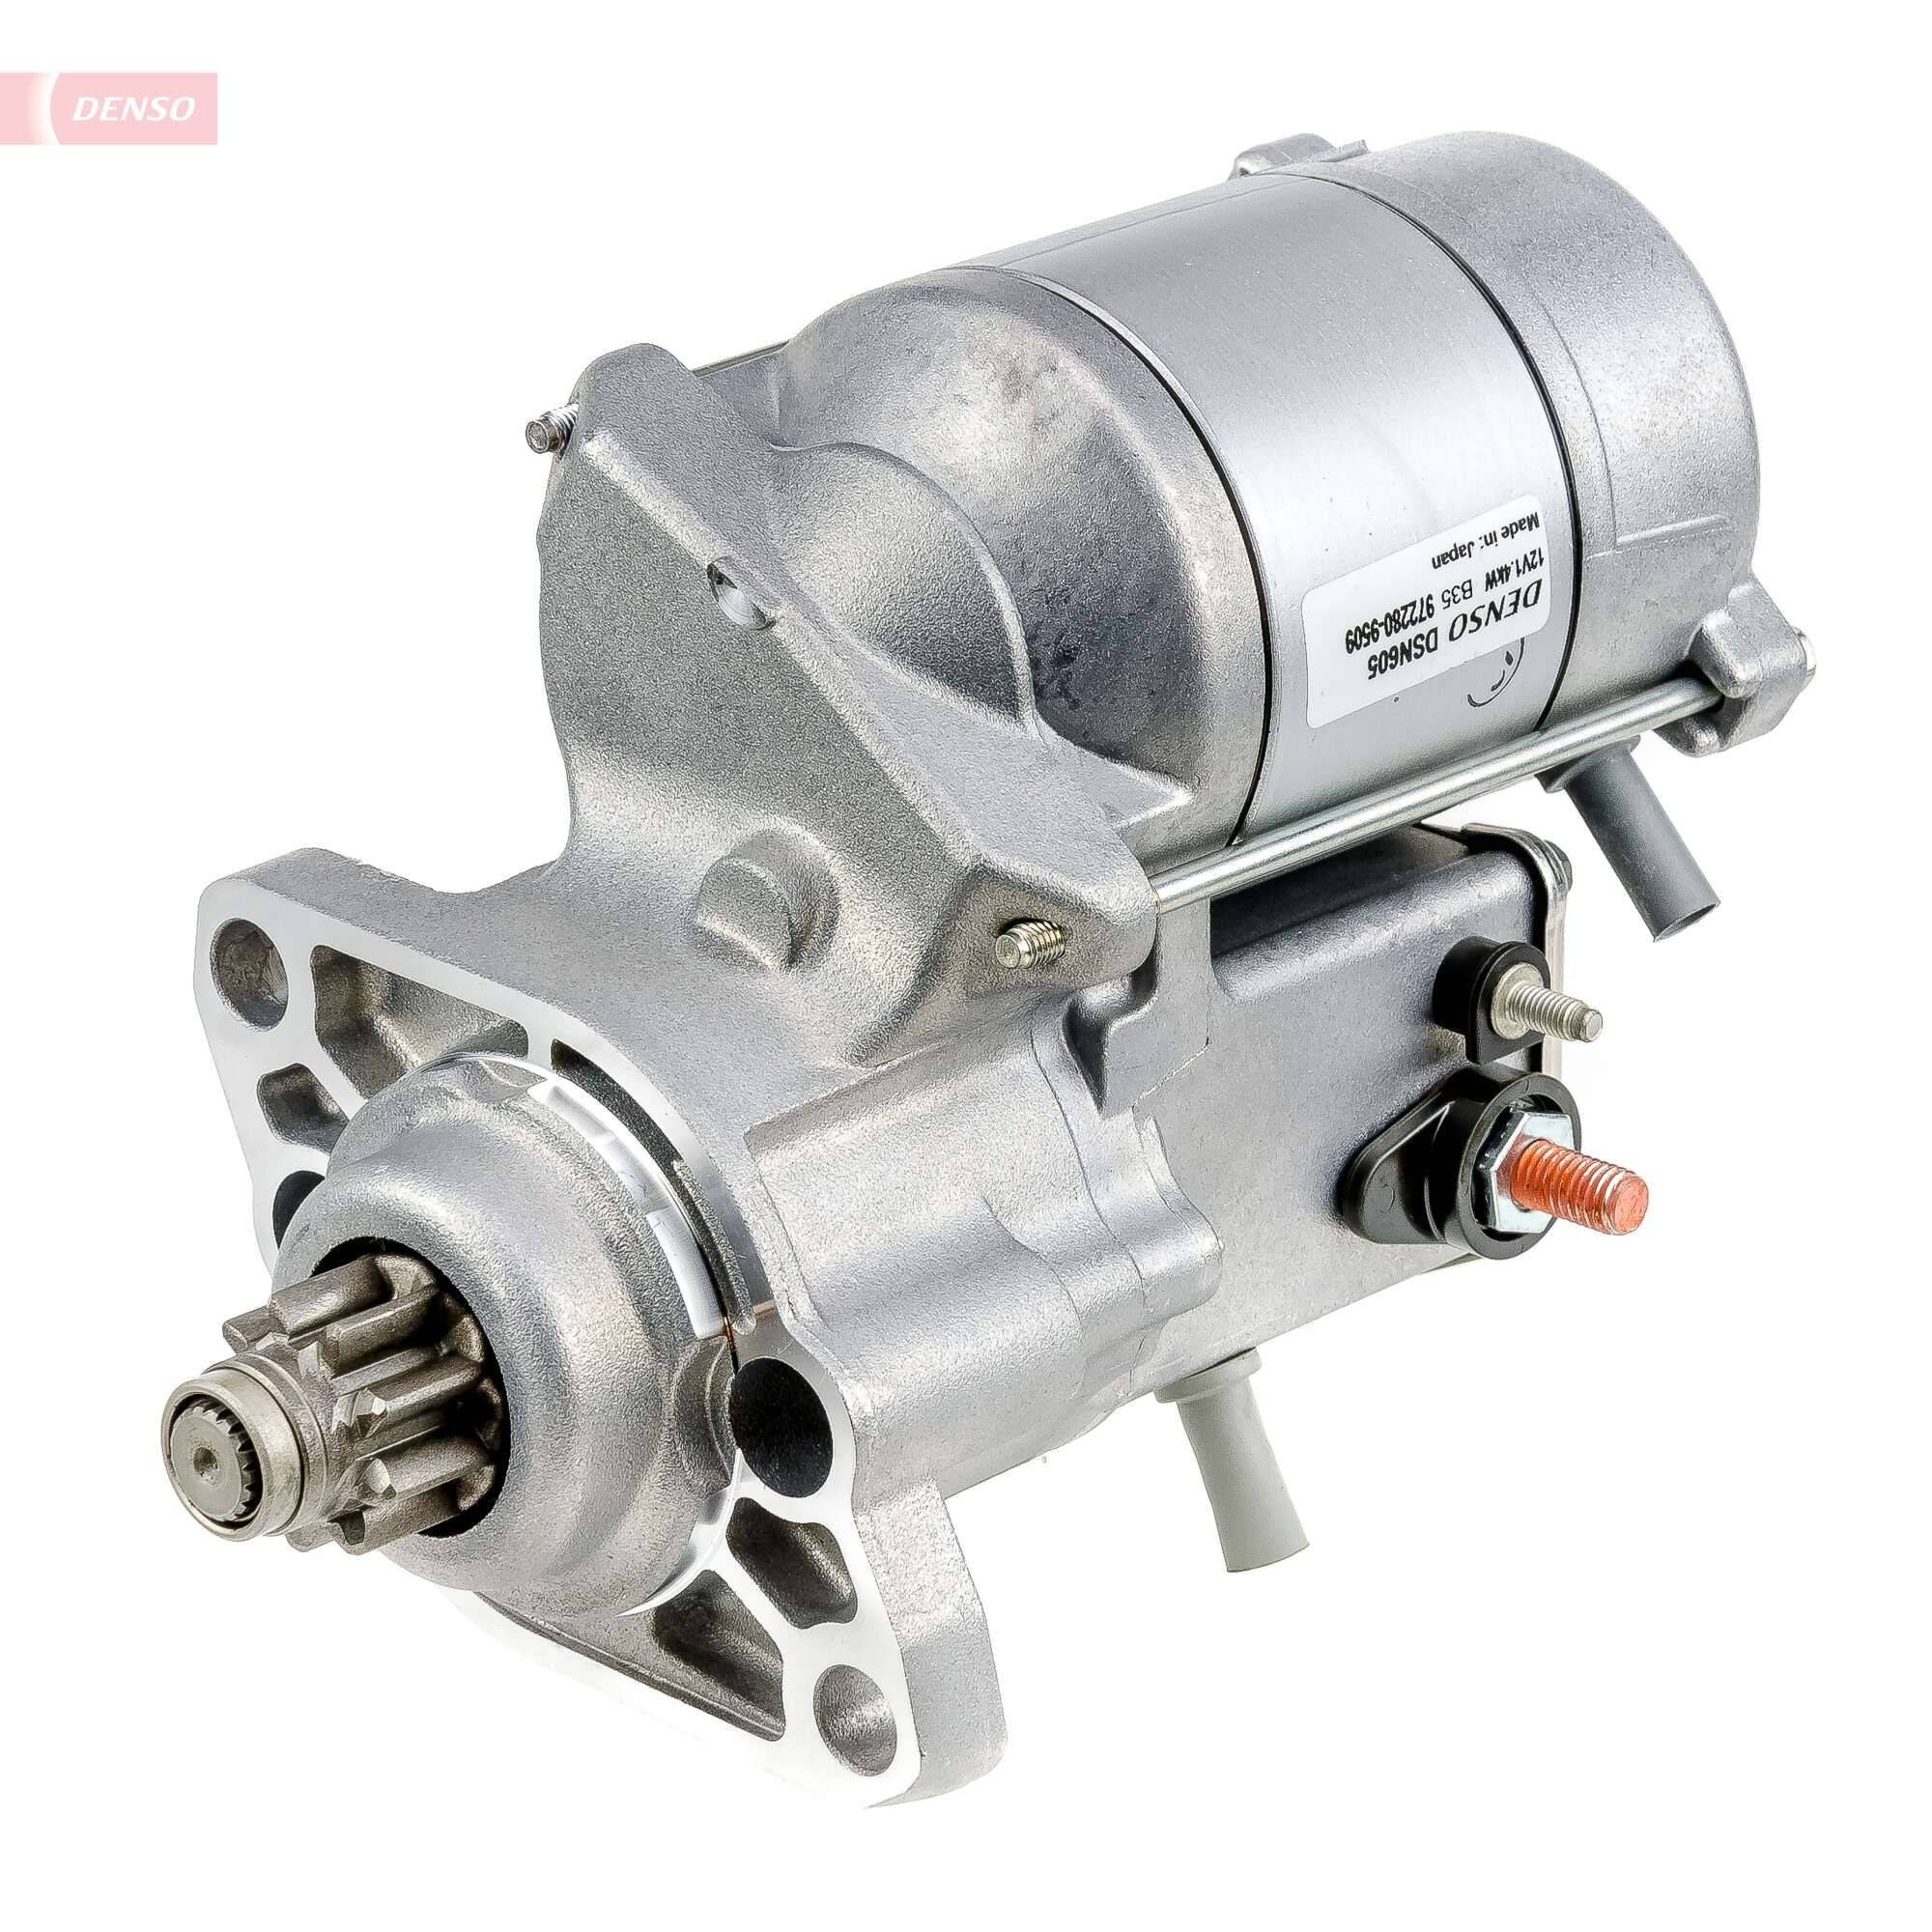 DENSO DSN605 Starter motor 96JV-11001-AB